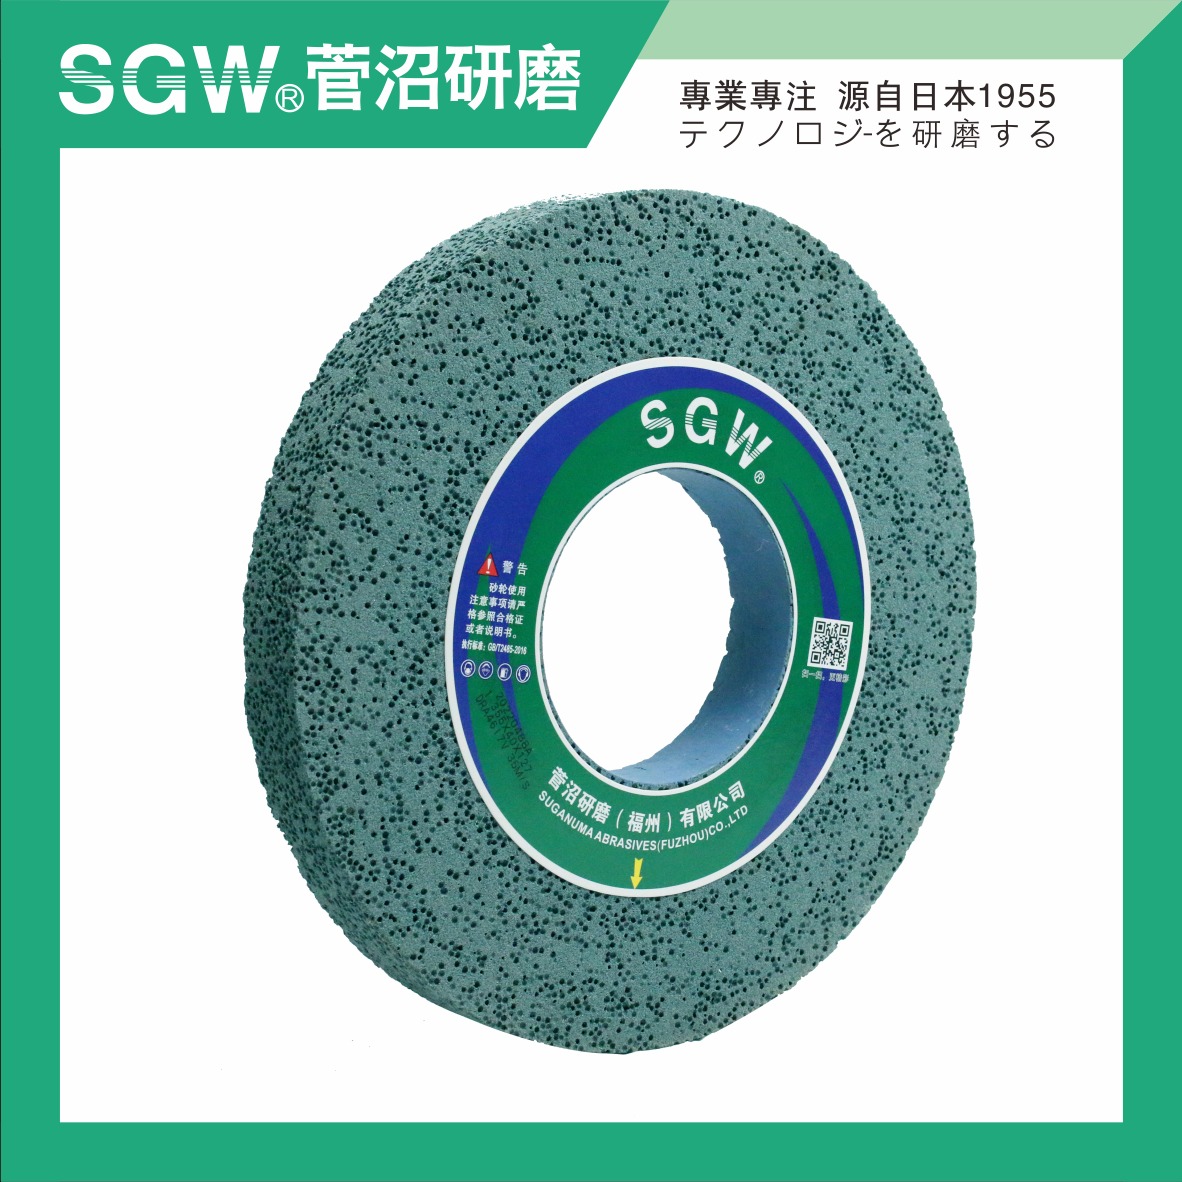 平形砂轮 陶瓷 绿炭化硅GC 外圆磨 平面磨 打磨 35040127 低温烧结